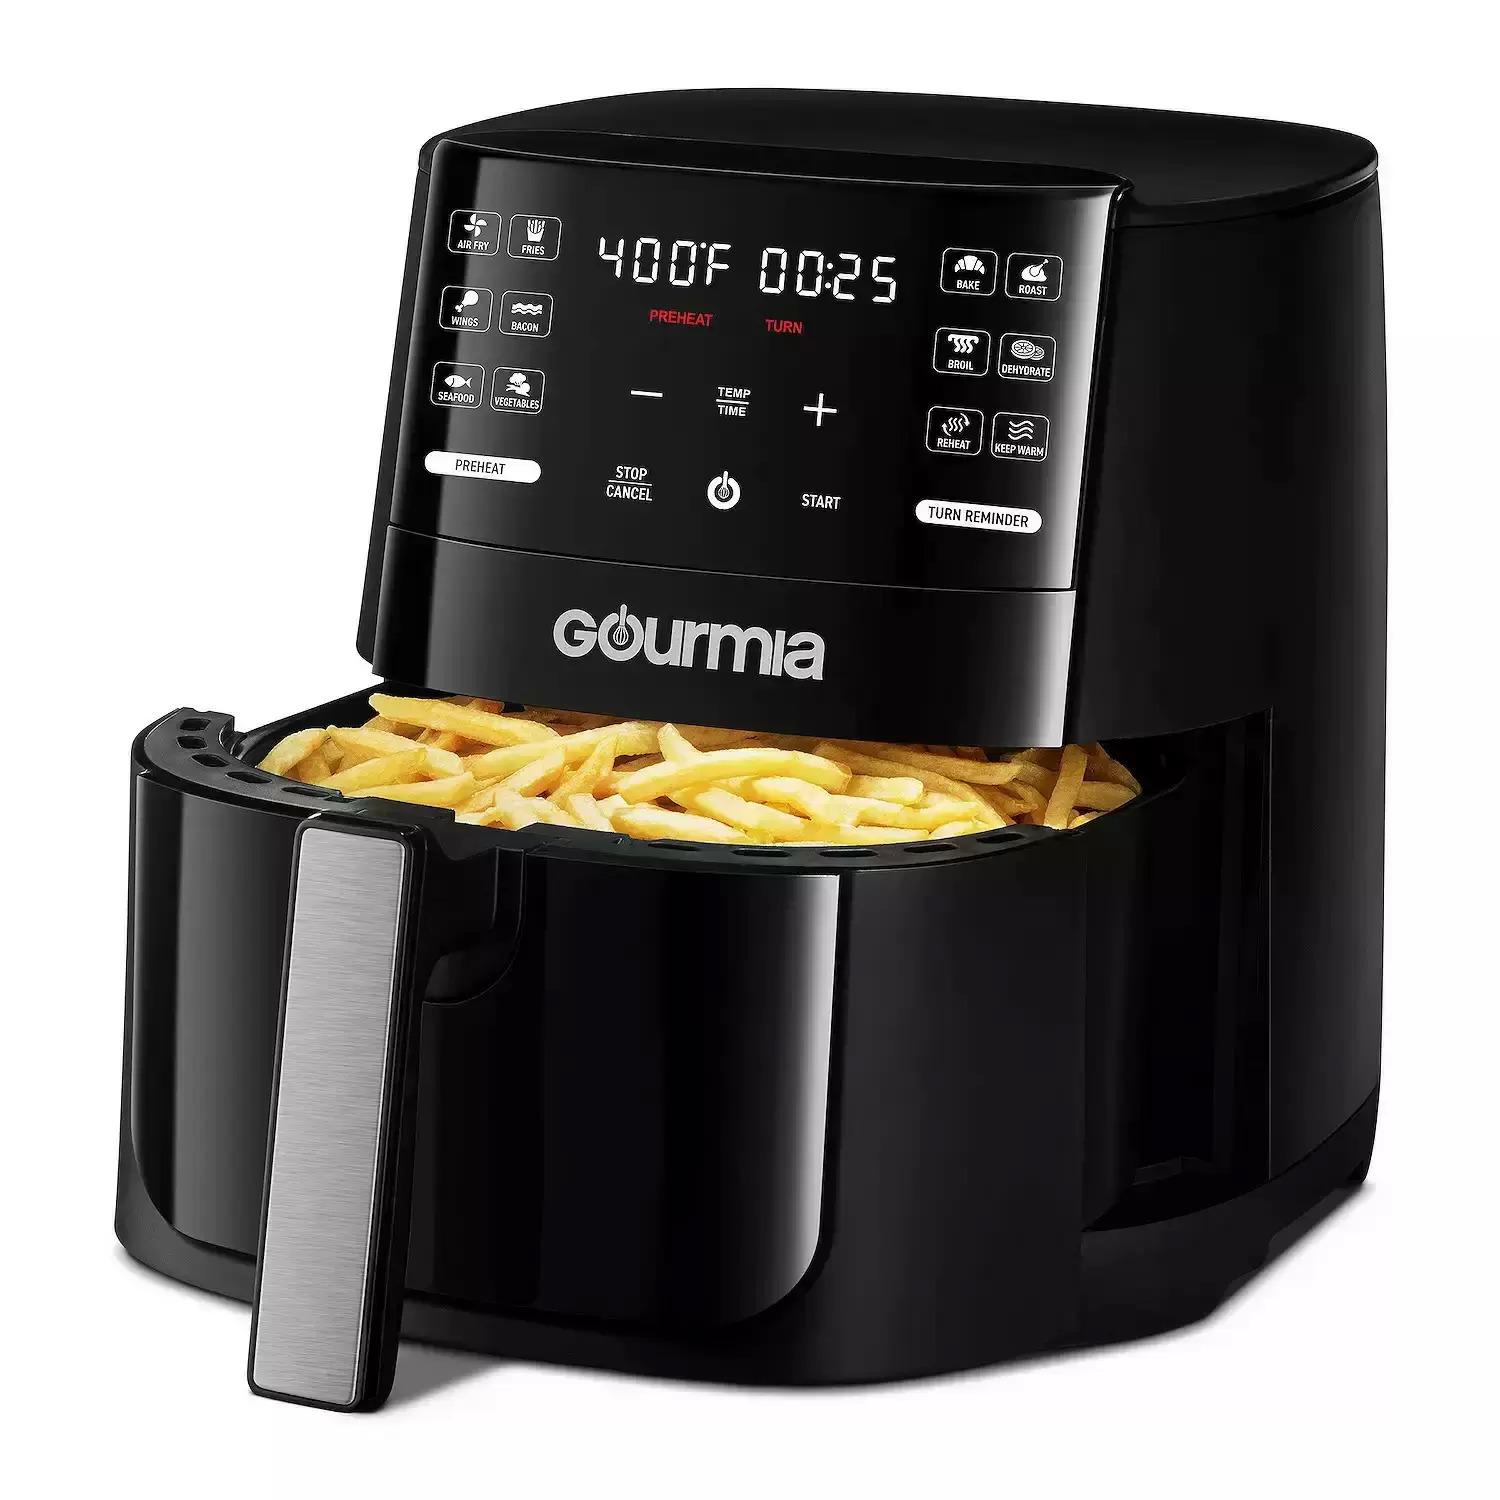 Gourmia Digital Air Fryer 6-Quart GAF612 for $31.99